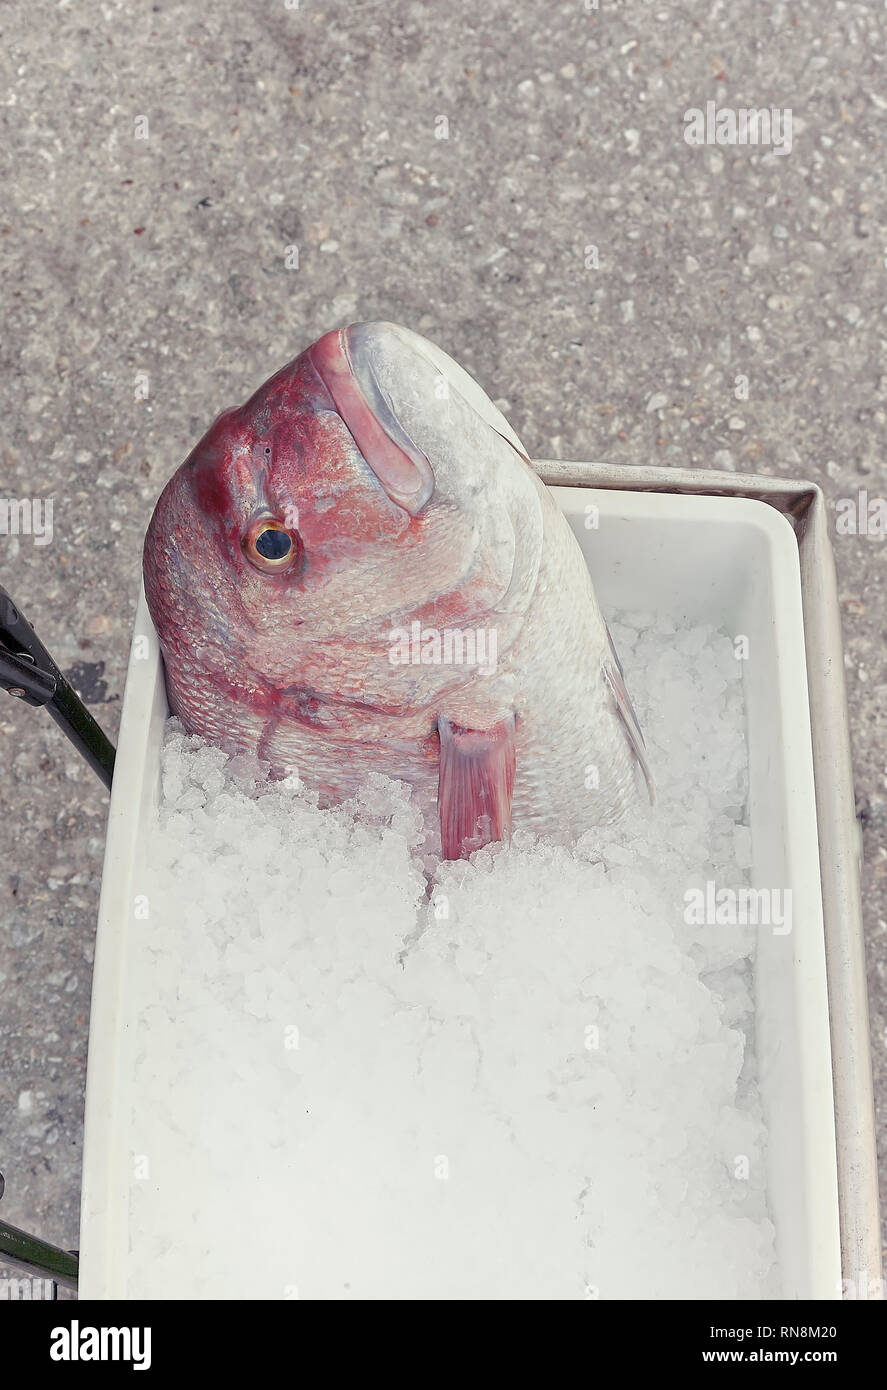 Lutiano rosso testa di pesce guardando in alto sulla benna con ghiaccio tritato. Isolato. Foto Stock